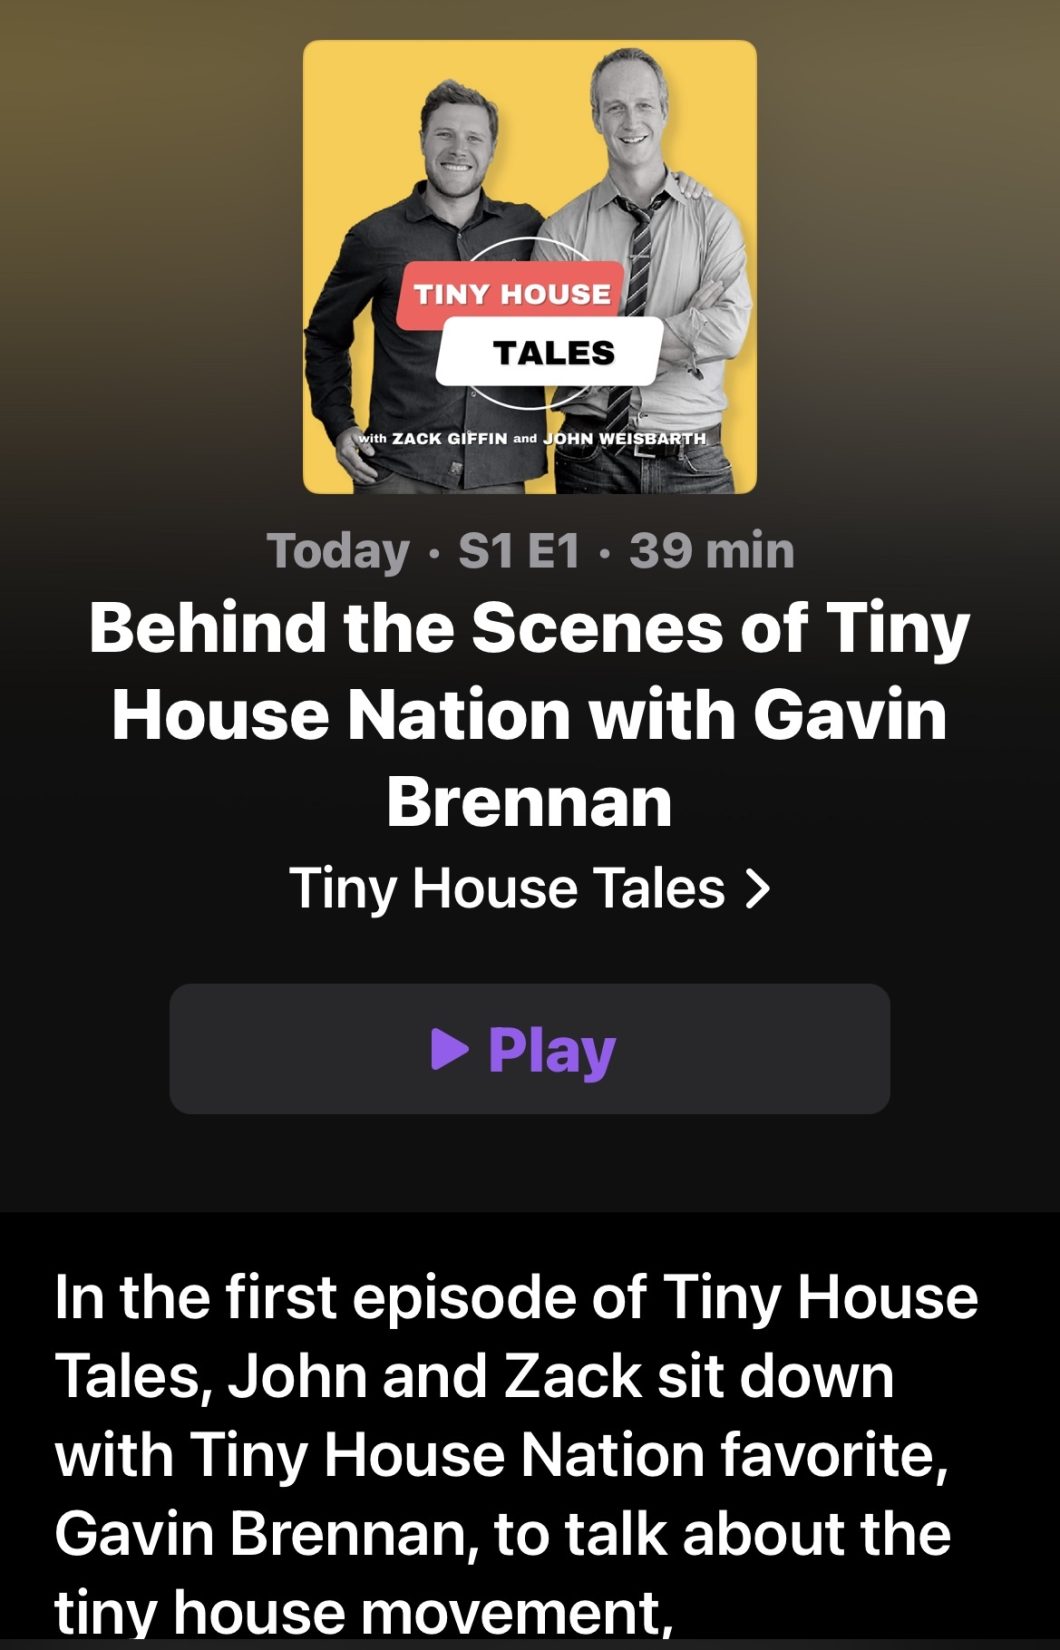 Tiny House Tales